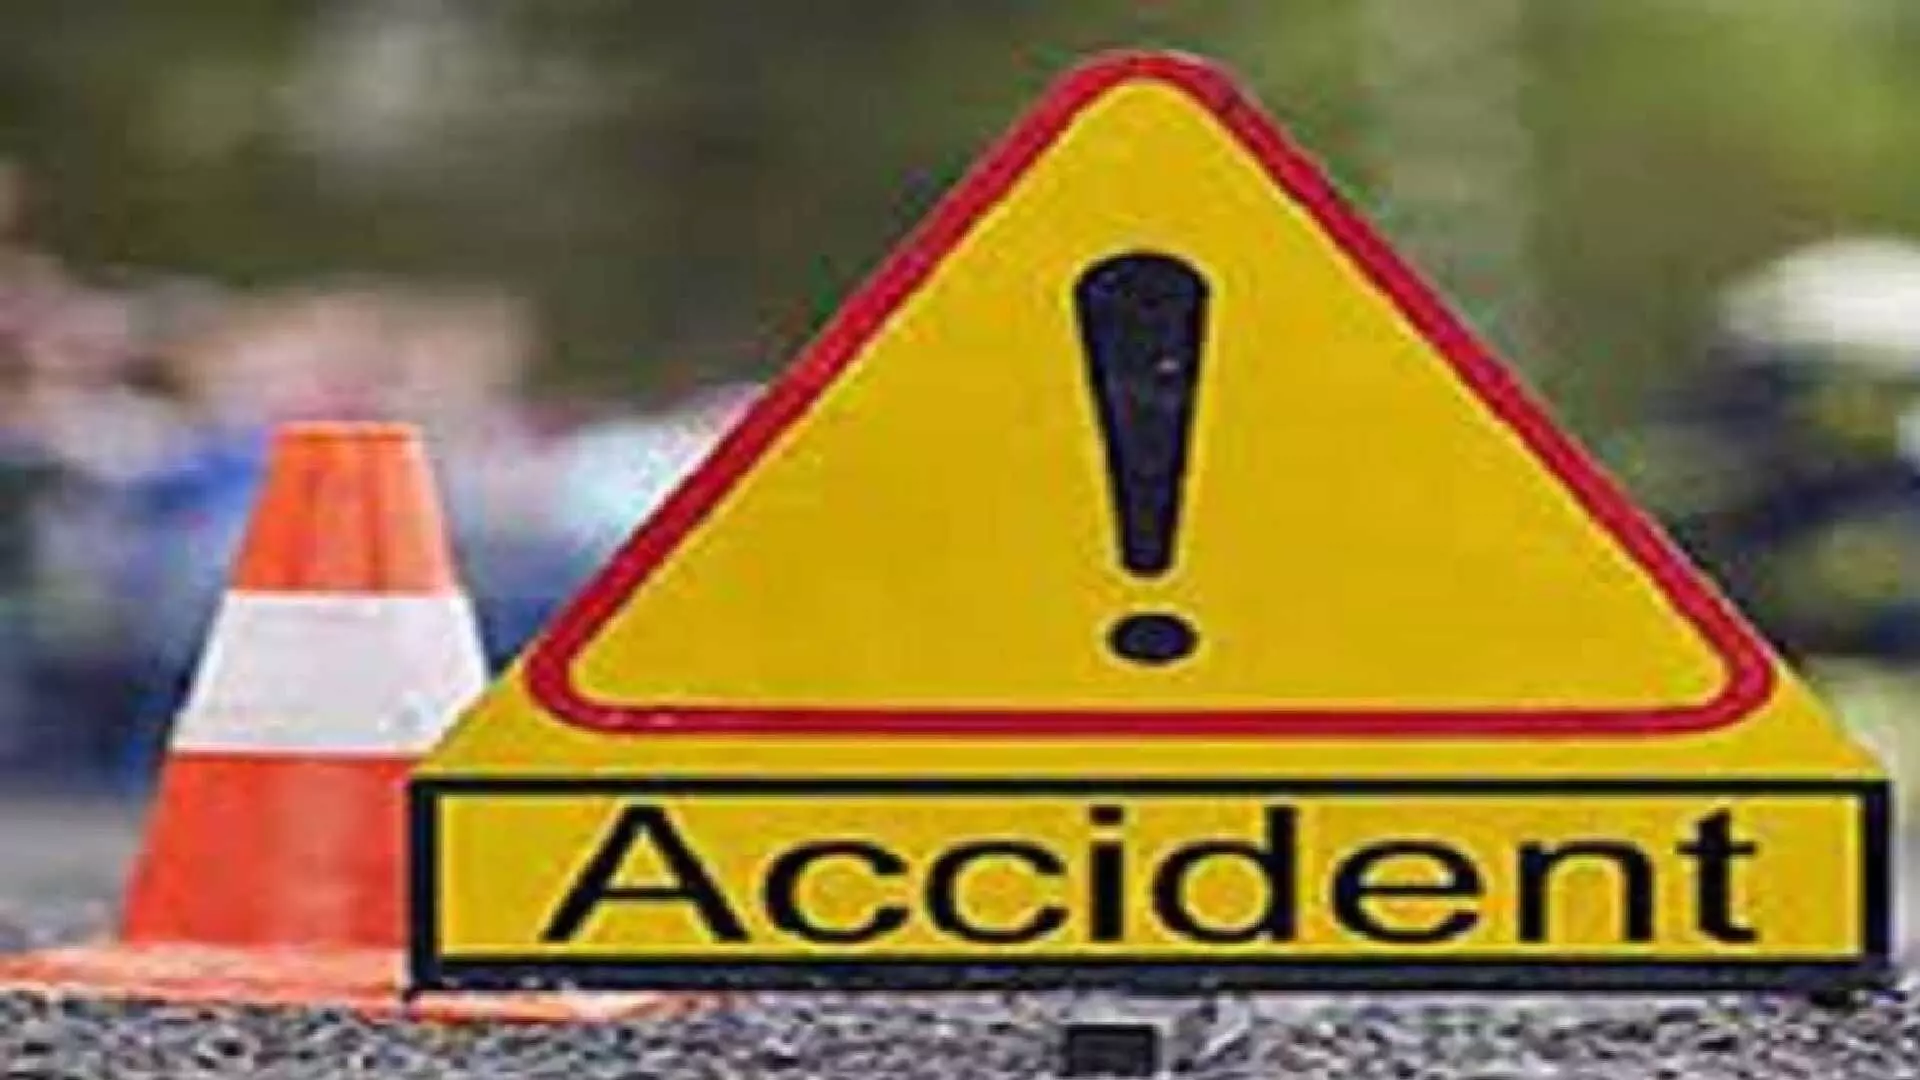 Bihar Accident : बिहारमध्ये गर्दीत ट्रक घुसला, 12 लोकांना चिरडले, दुर्घटनेची पंतप्रधान मोदी यांच्याकडून दखल